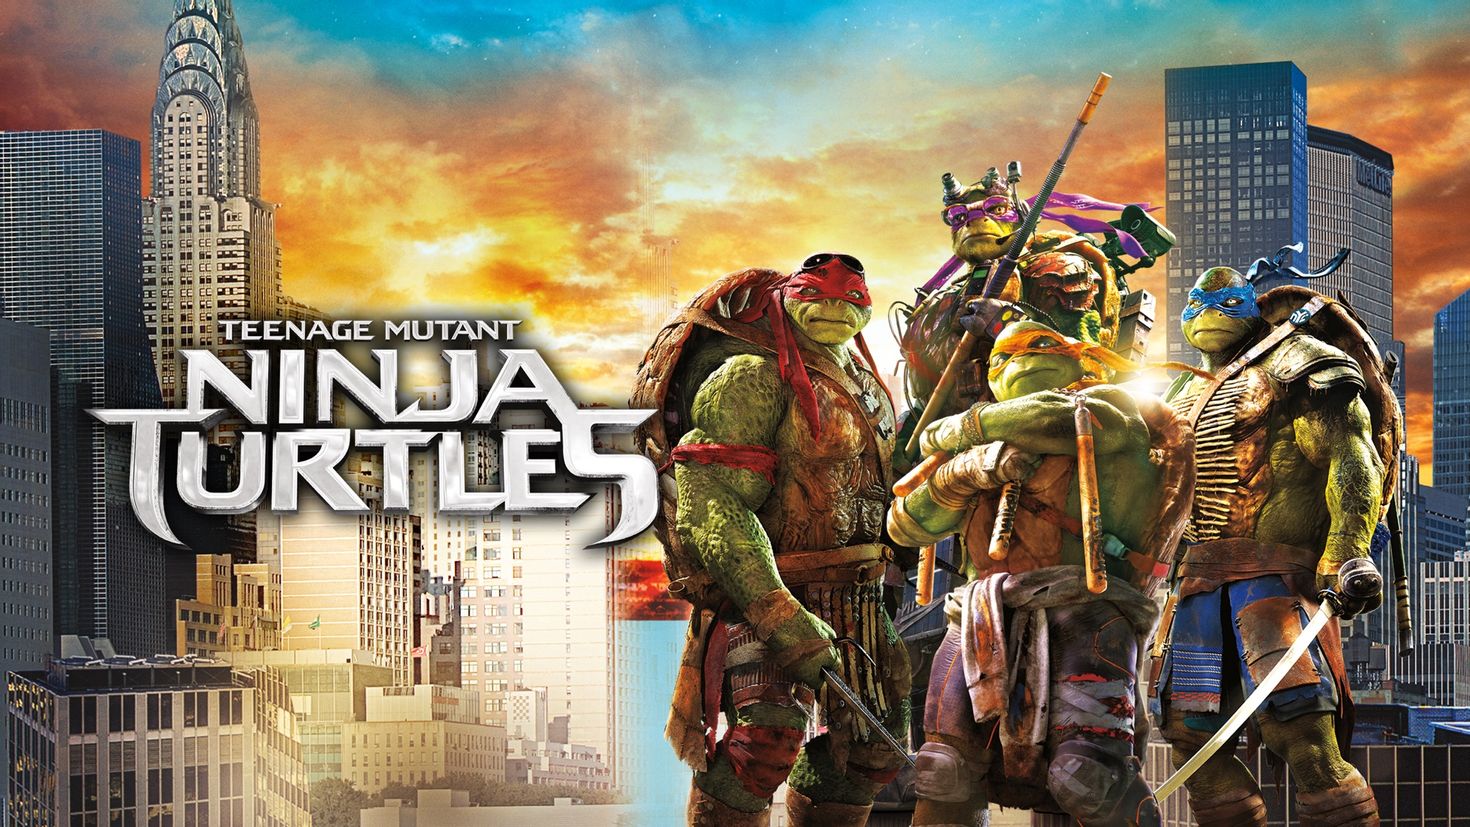 Teenage mutant ninja turtles out of the shadows купить ключ стим фото 42